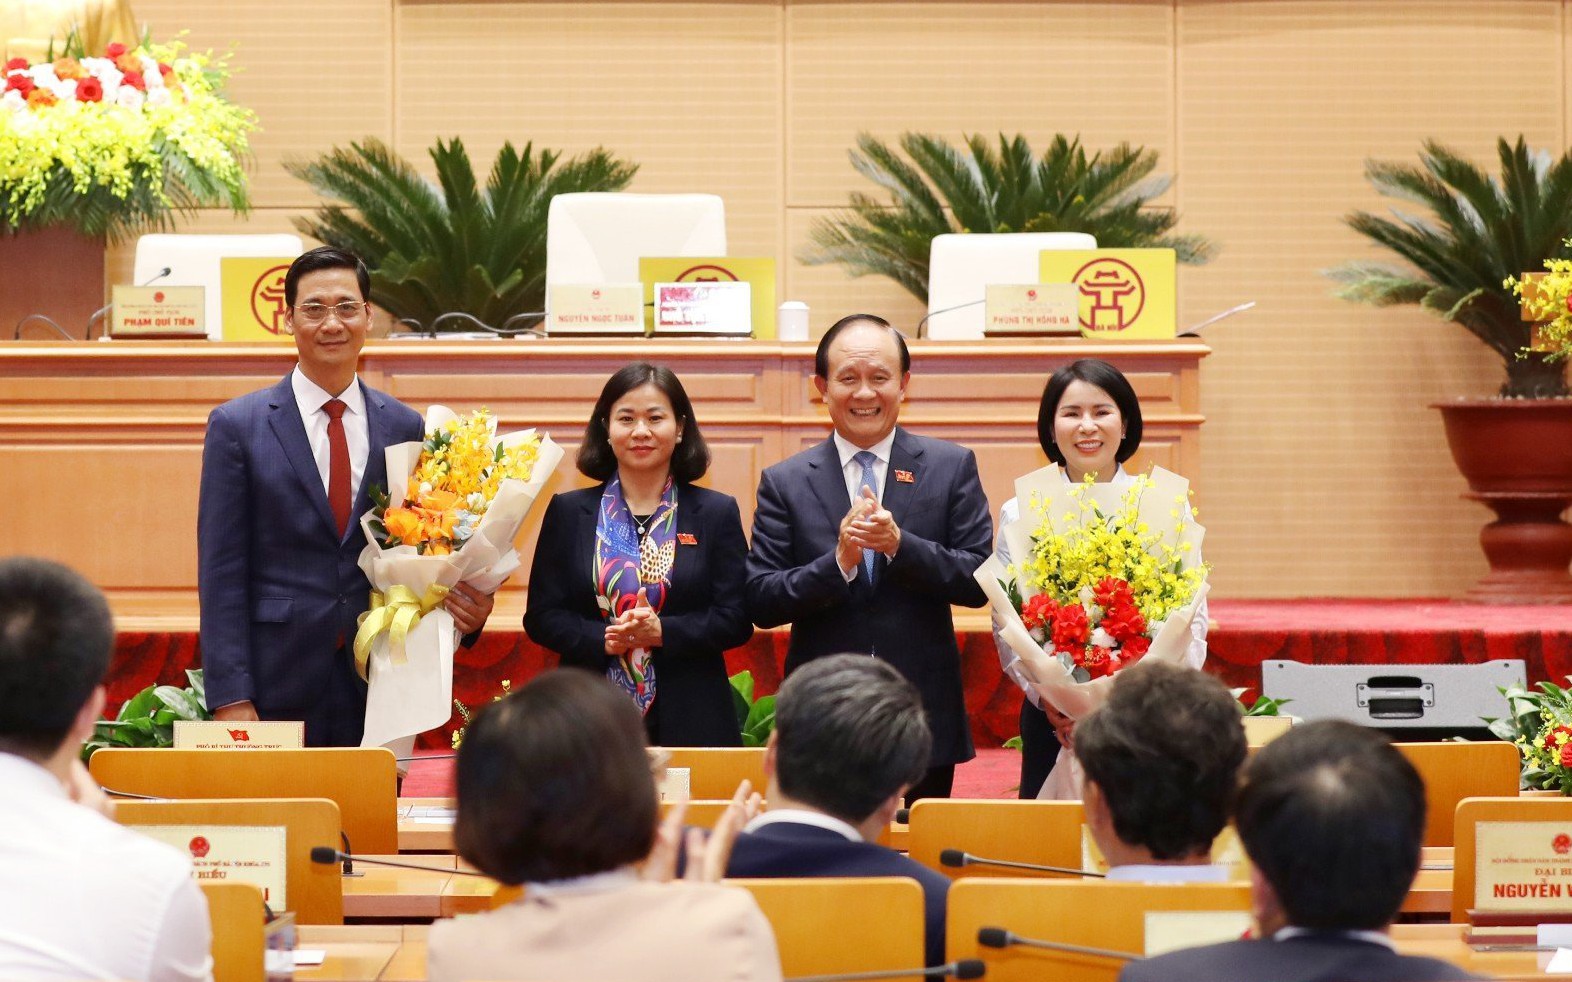 Miễn nhiệm chức danh Ủy viên UBND TP.Hà Nội với bà Trần Thị Nhị Hà và bầu bổ sung một nhân sự